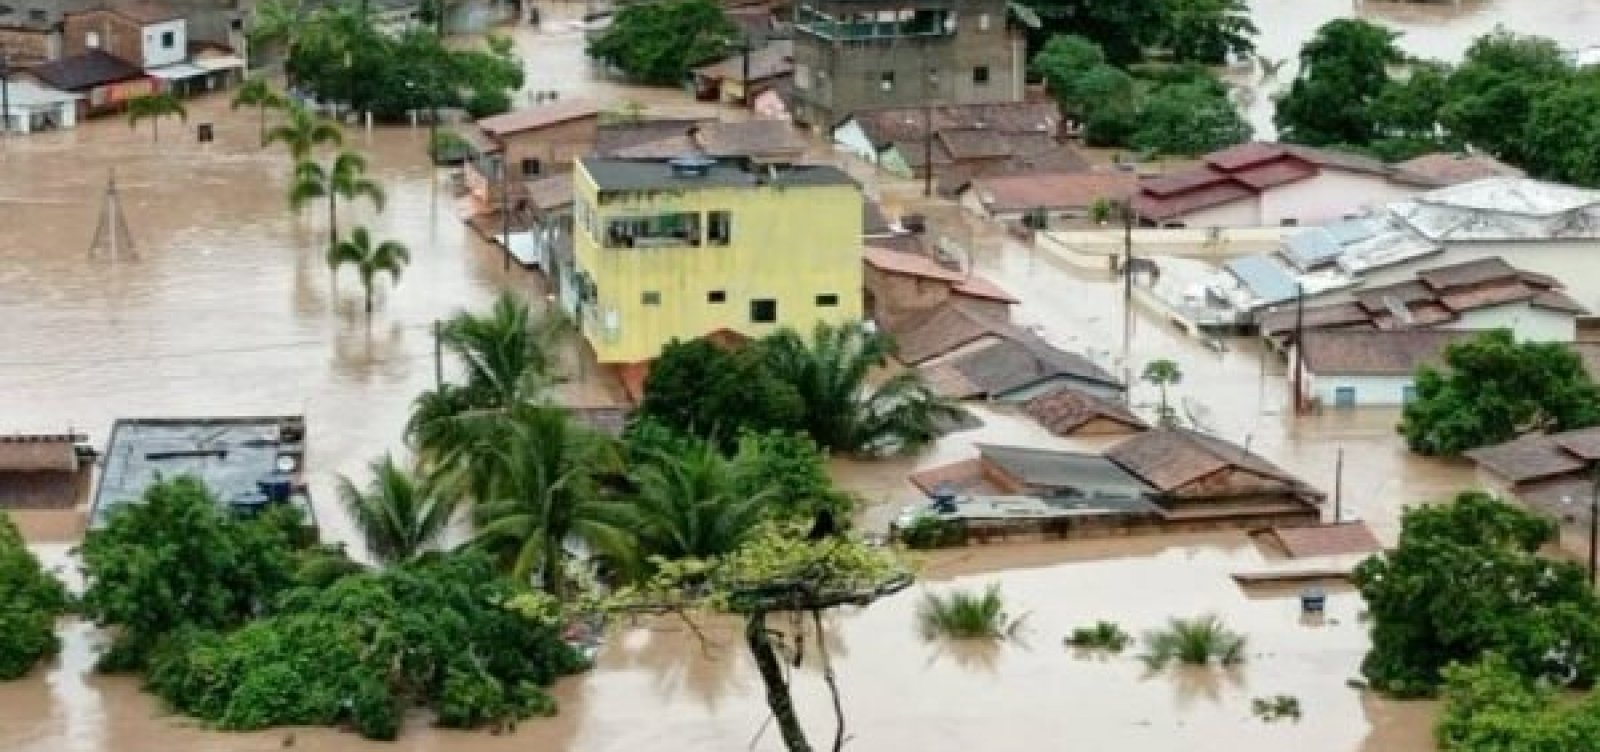 Vacinas e medicamentos foram perdidos em cidades afetadas pelas chuvas na Bahia, diz Rui 